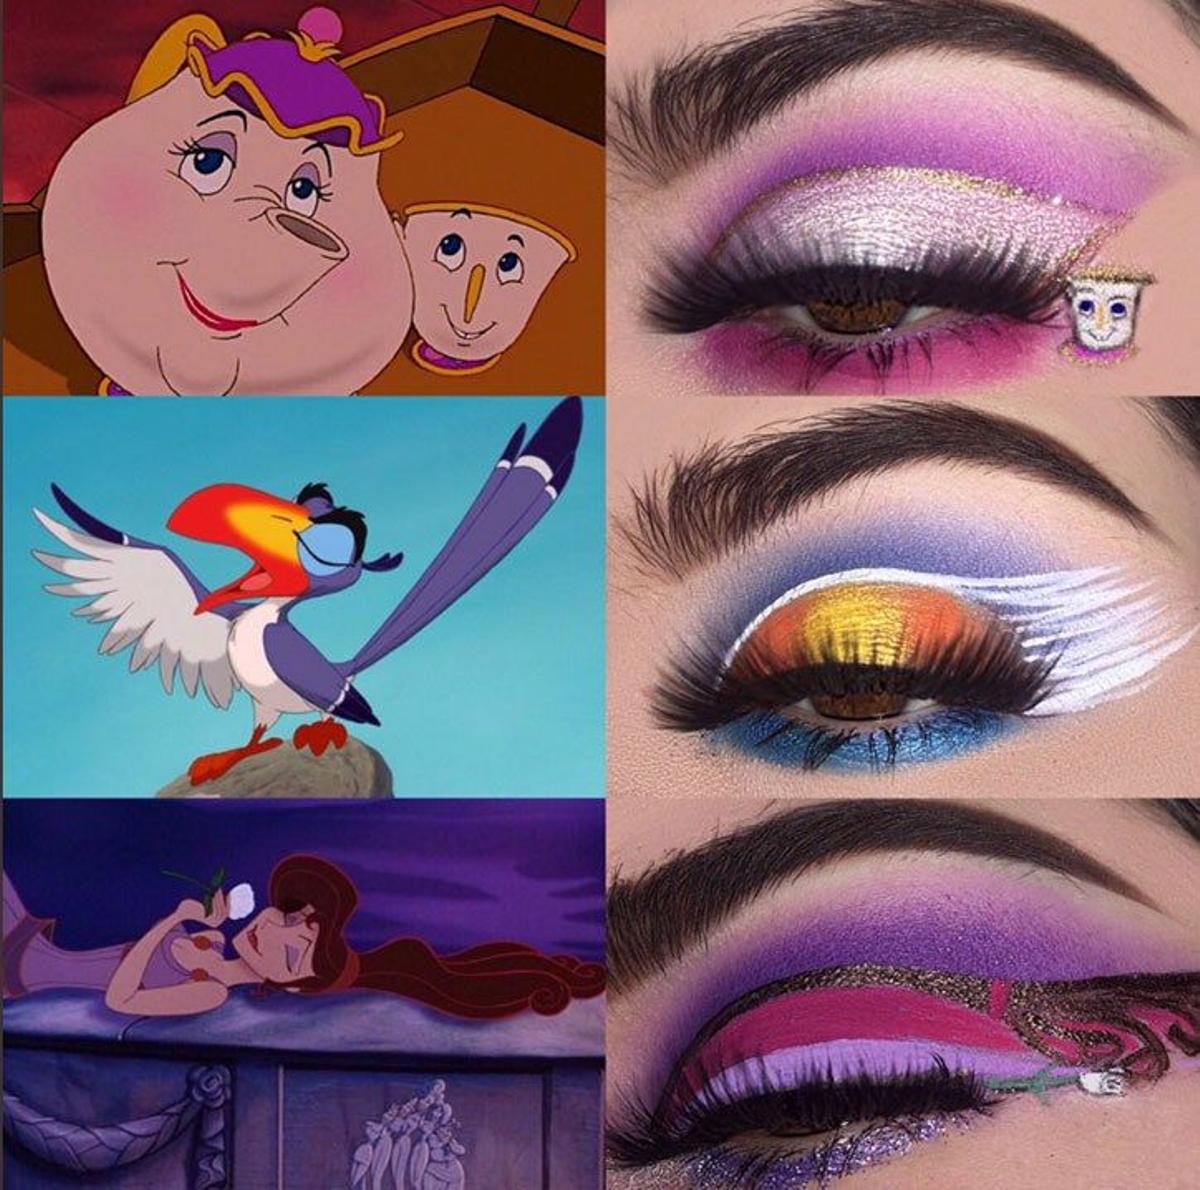 Maquillaje inspirado en personajes Disney